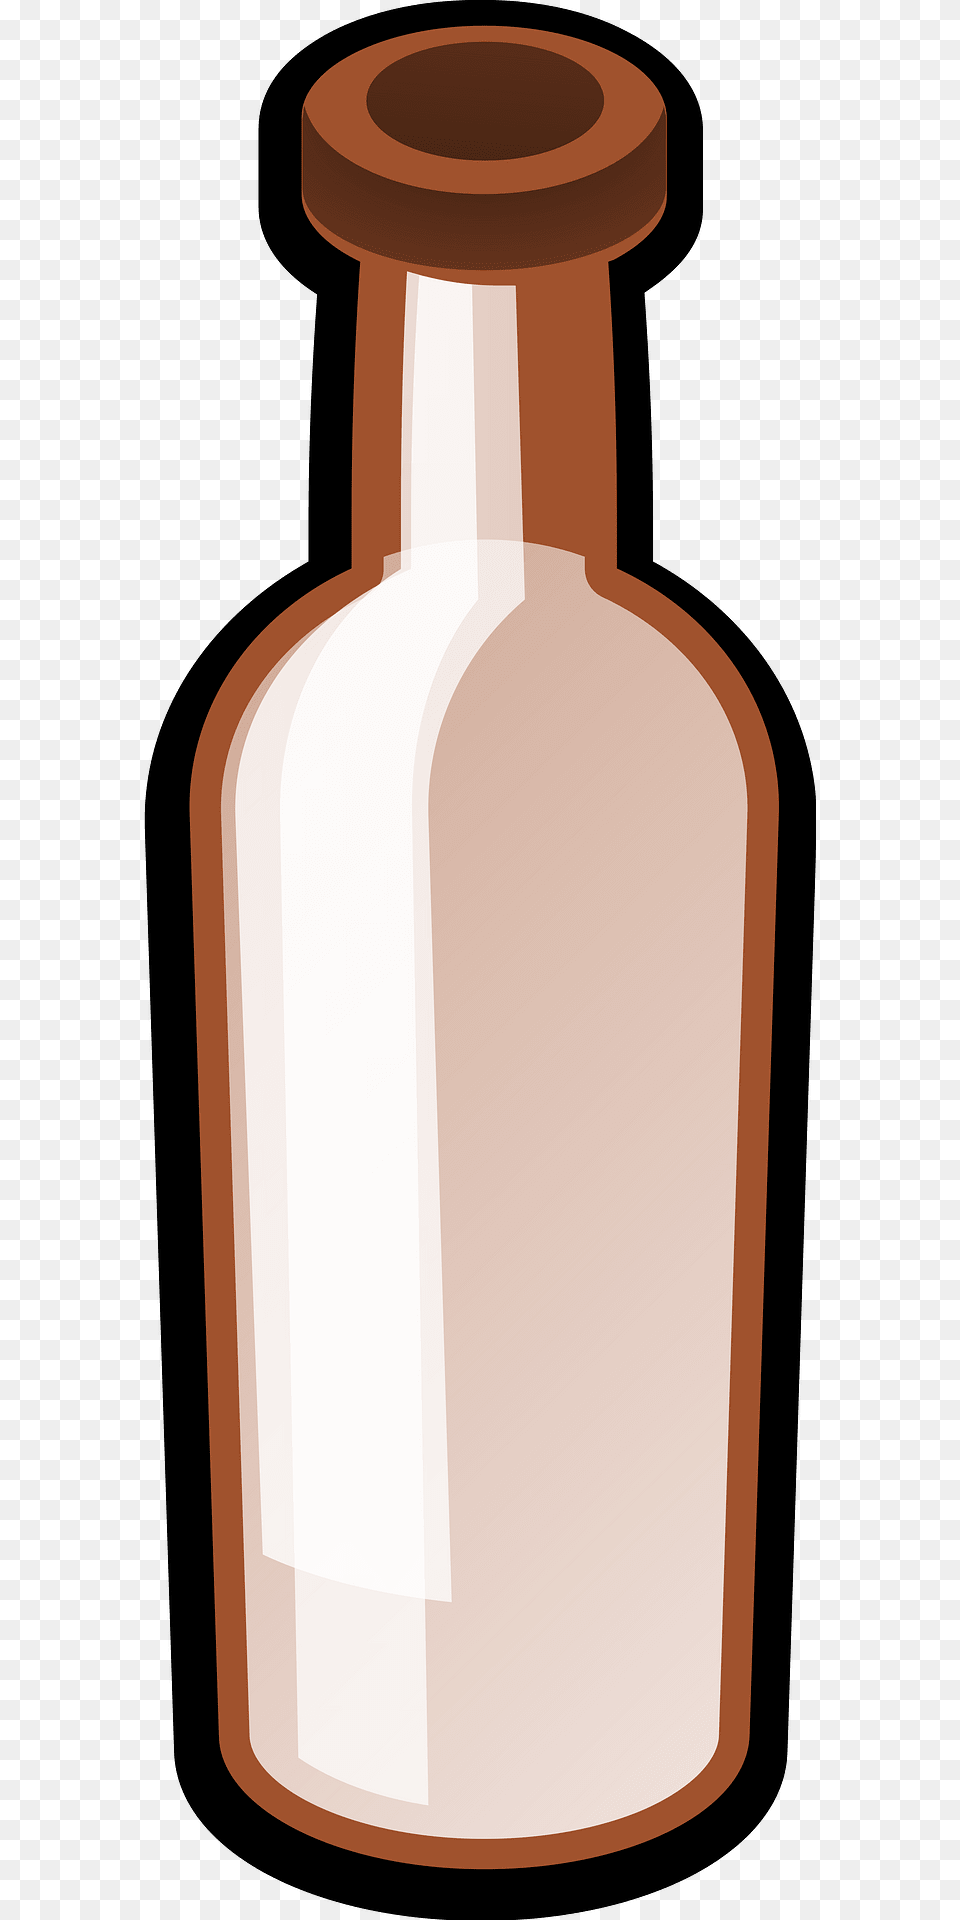 Bottle Clipart, Jar, Pottery, Vase Free Transparent Png